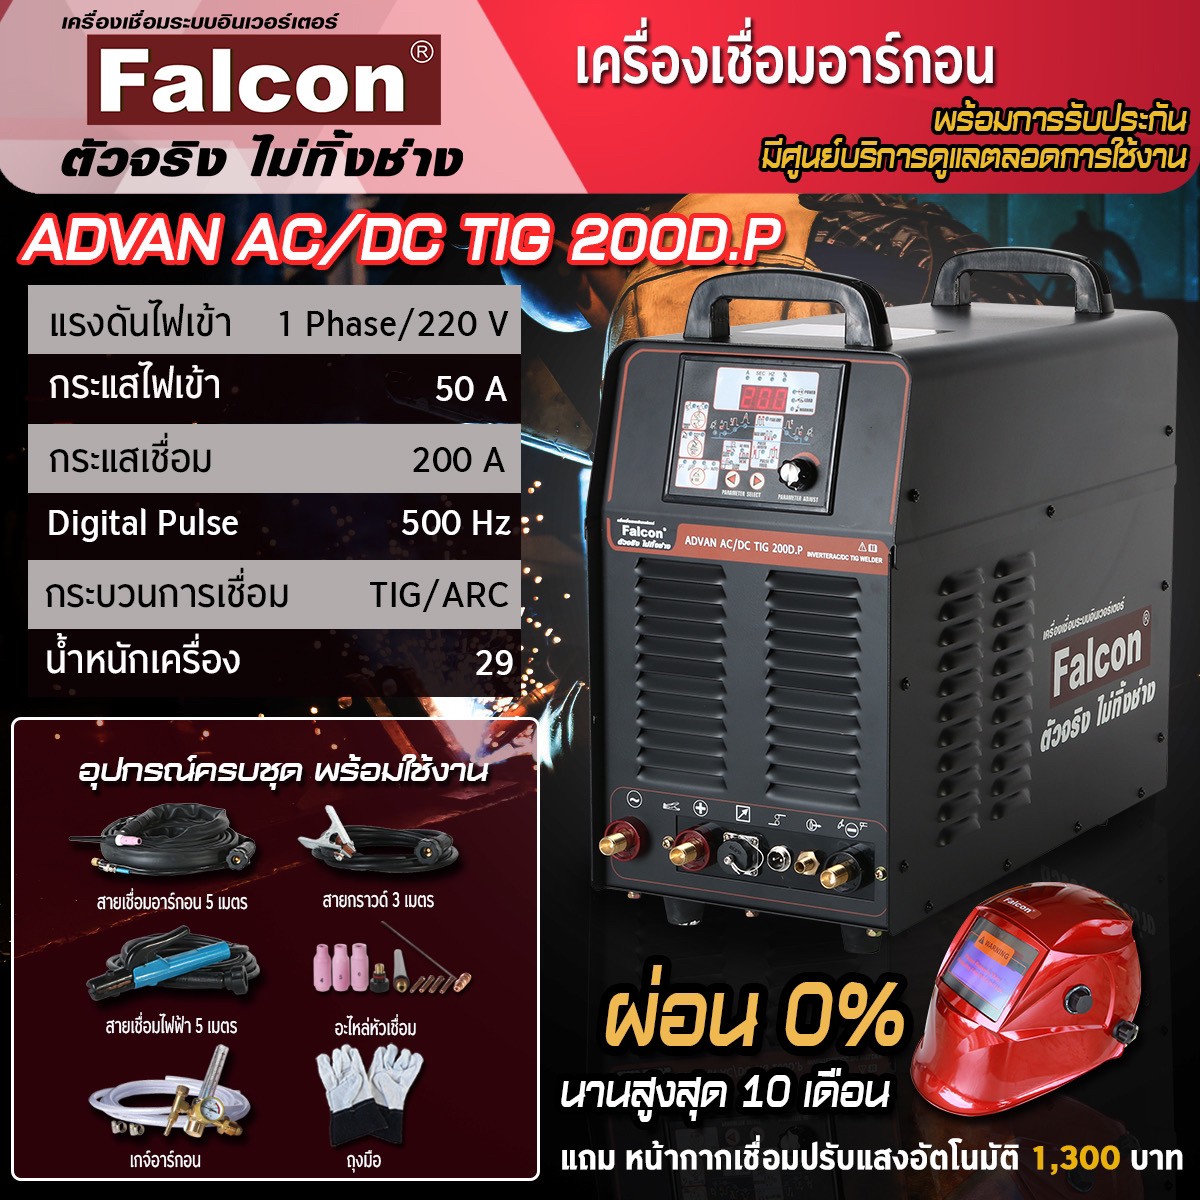 เครื่องเชื่อมอลูมิเนียม Falcon ADVAN AC/DC TIG 200D.P เครื่องเชื่อมไฟฟ้า ตู้เชื่อม (สีดำ) เชื่อมโลหะได้ทุกชนิด